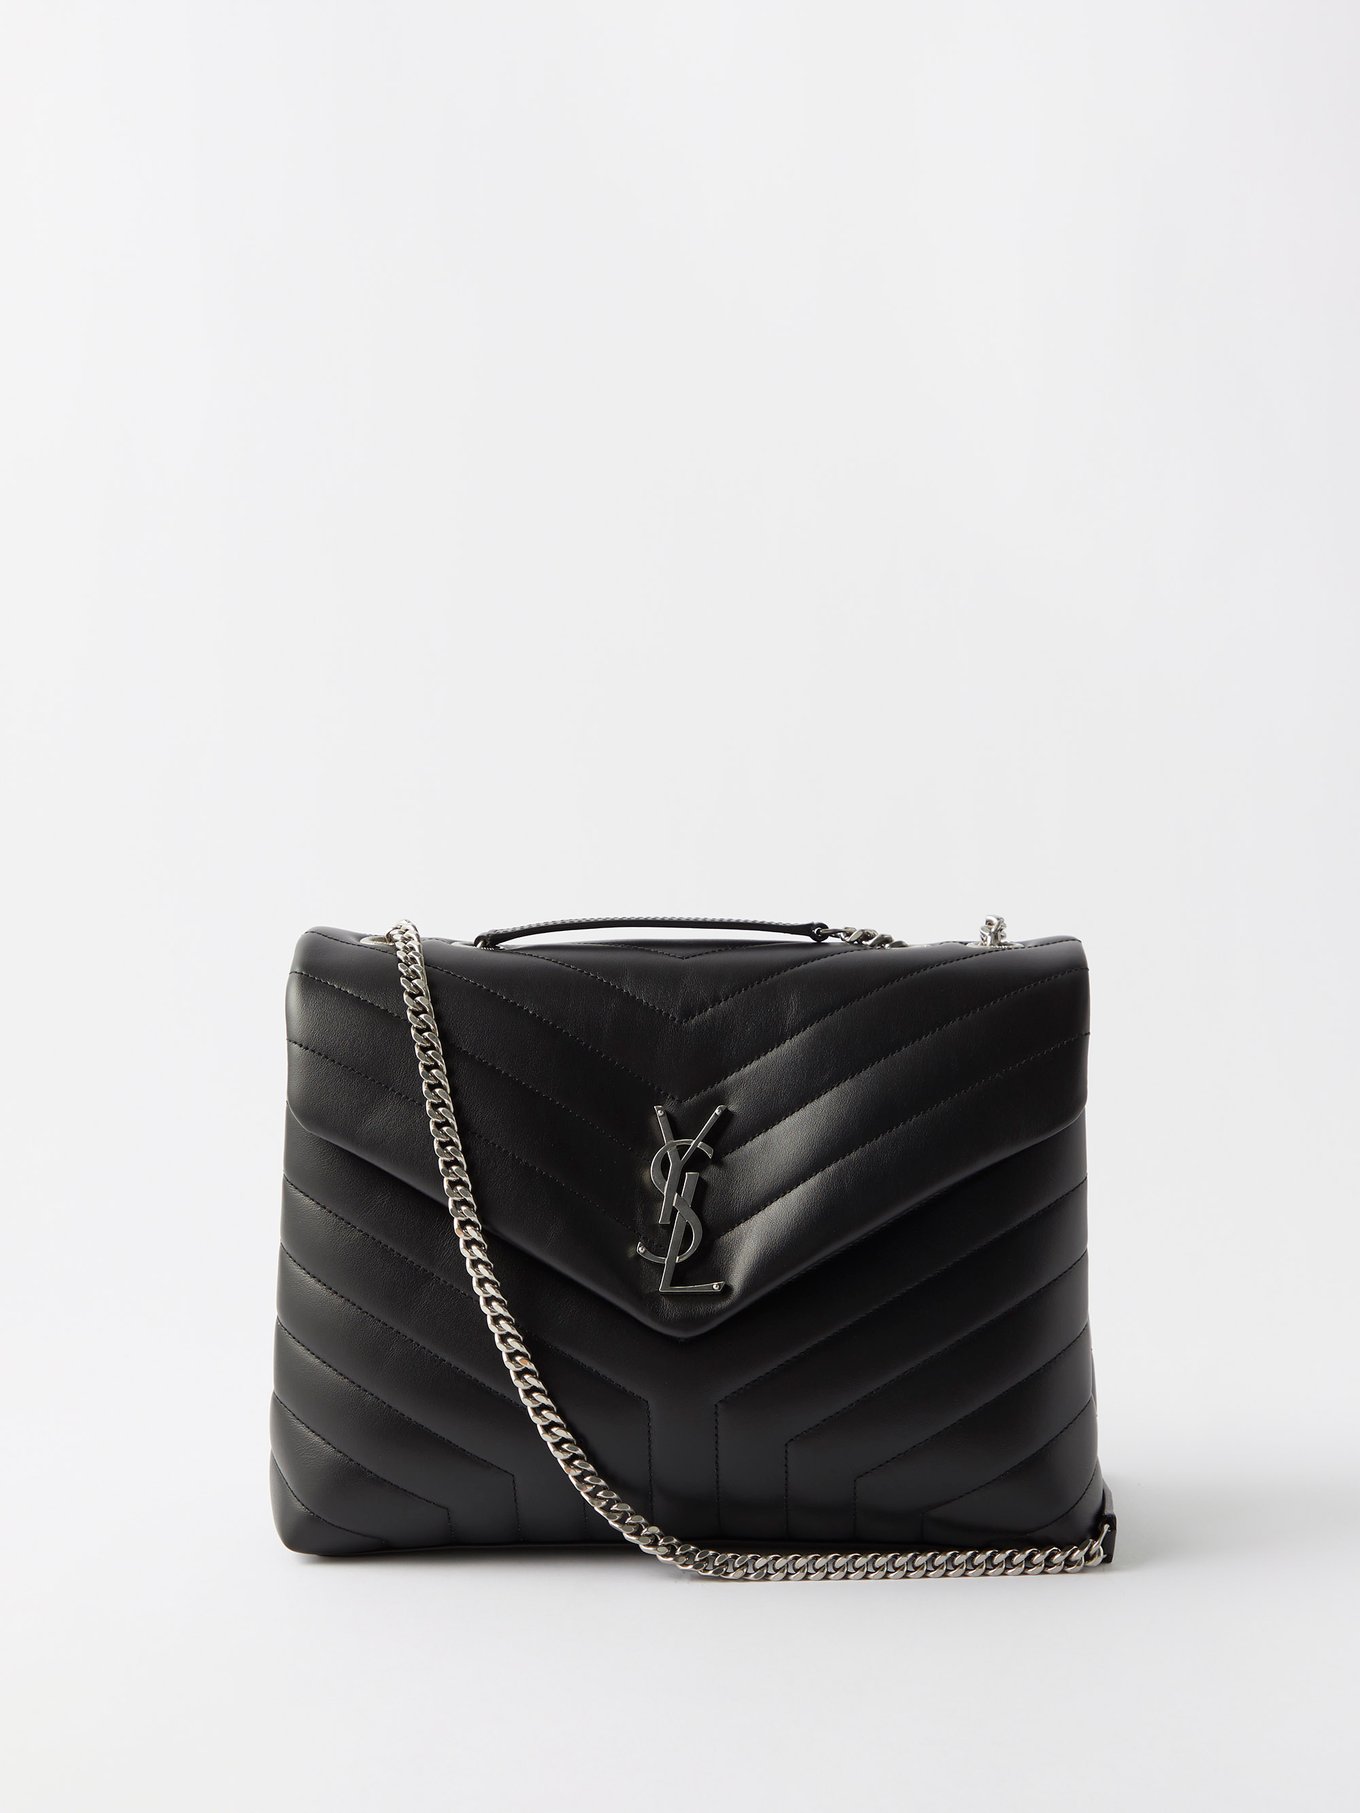 Black Loulou medium quilted-leather shoulder bag, Saint Laurent